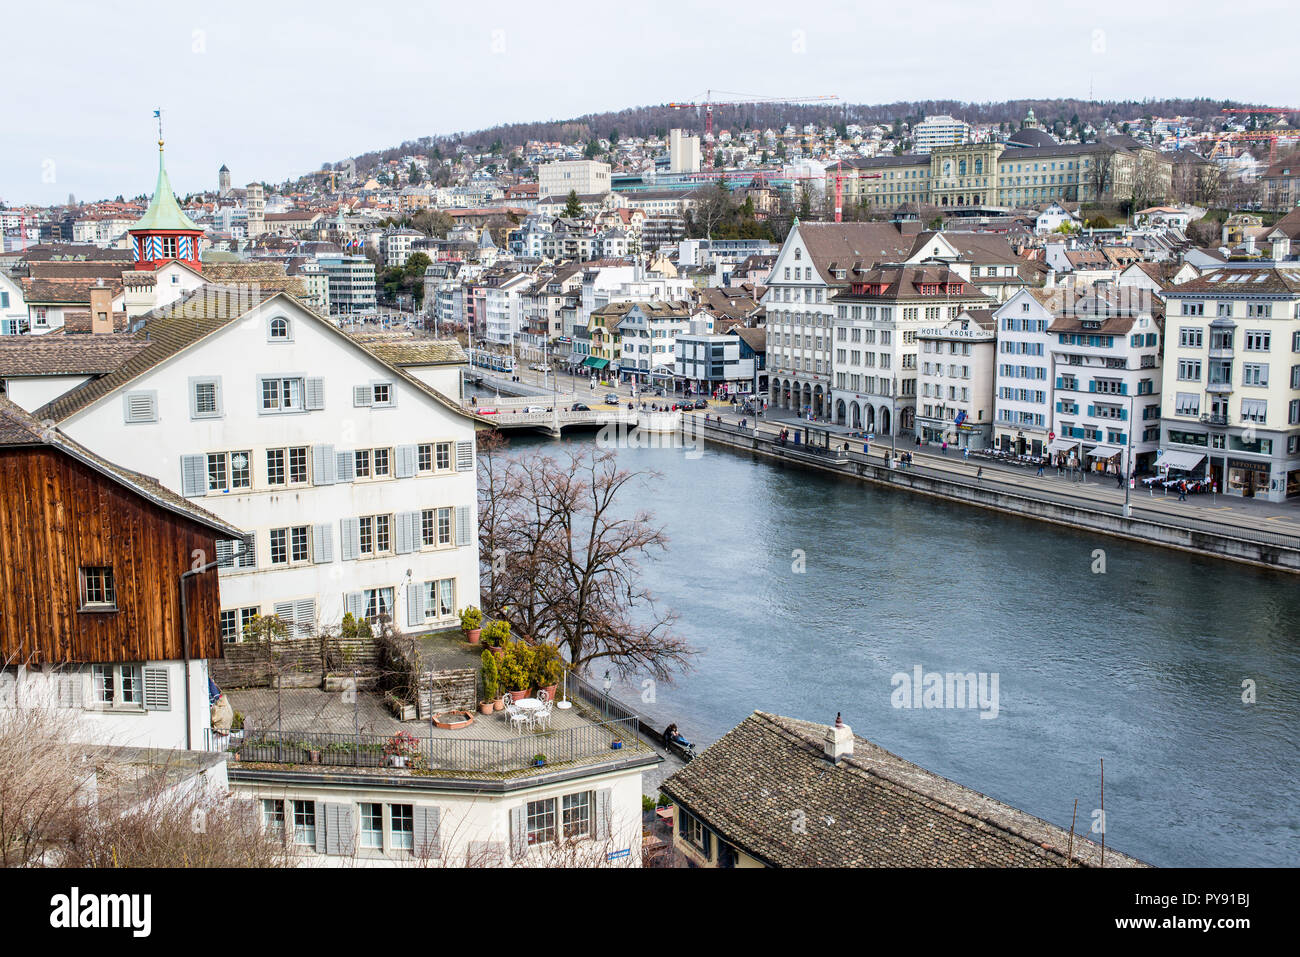 Zurich, Switzerland - March 2017: Aerial view of Zurich city center with river Limmat Stock Photo